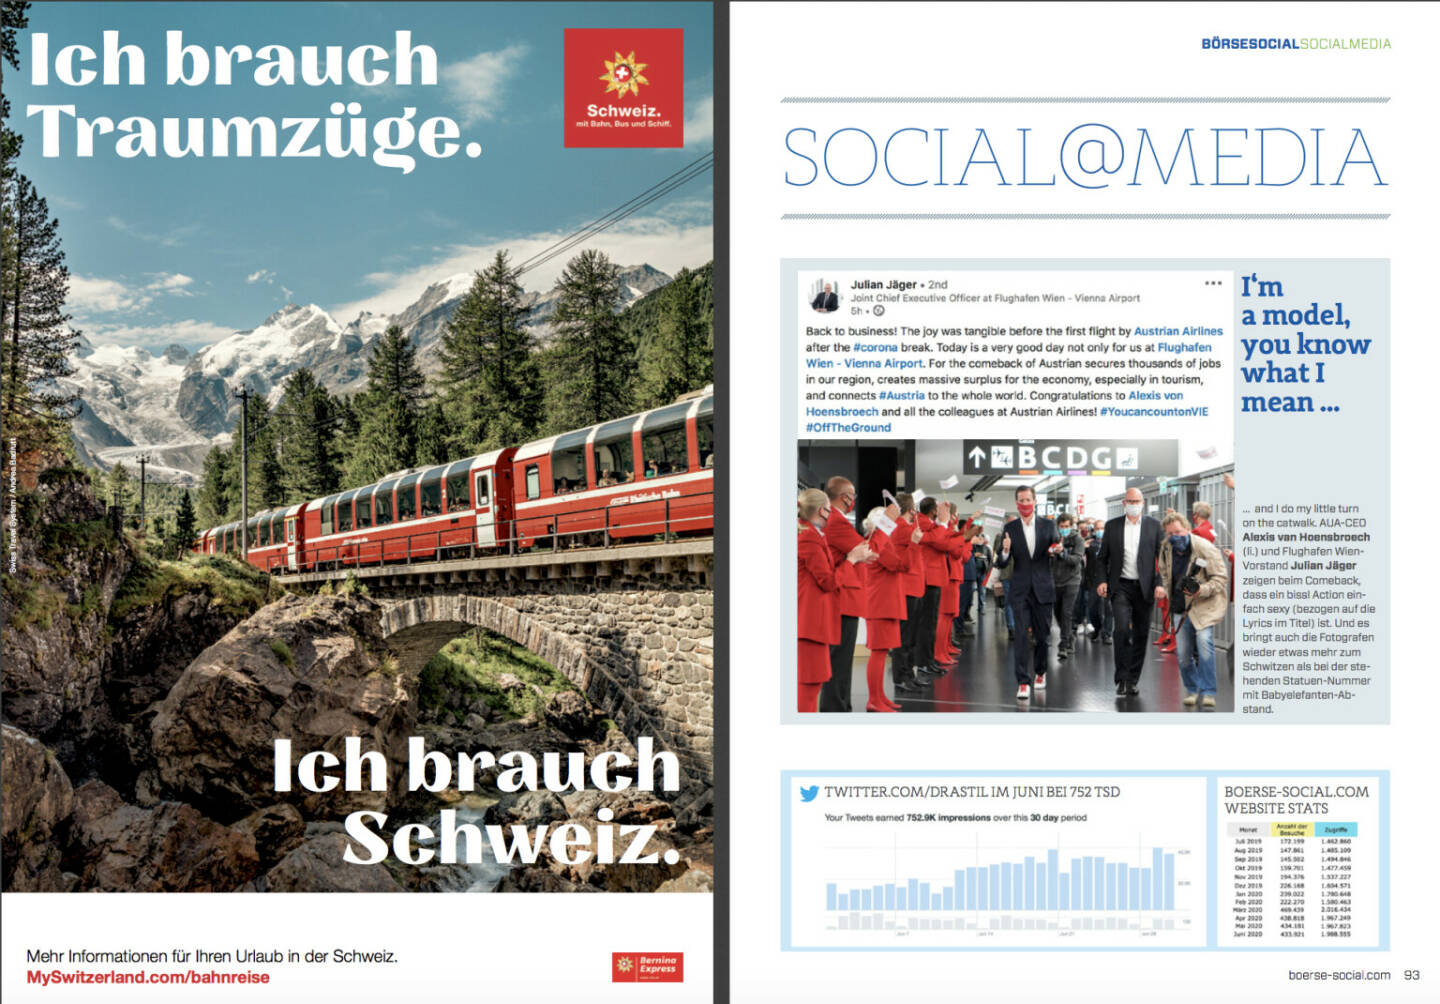 Schweiz, Julian Jäger und unsere Zugriffe im http://www.boerse-social.com/magazine , Ausgabe 42